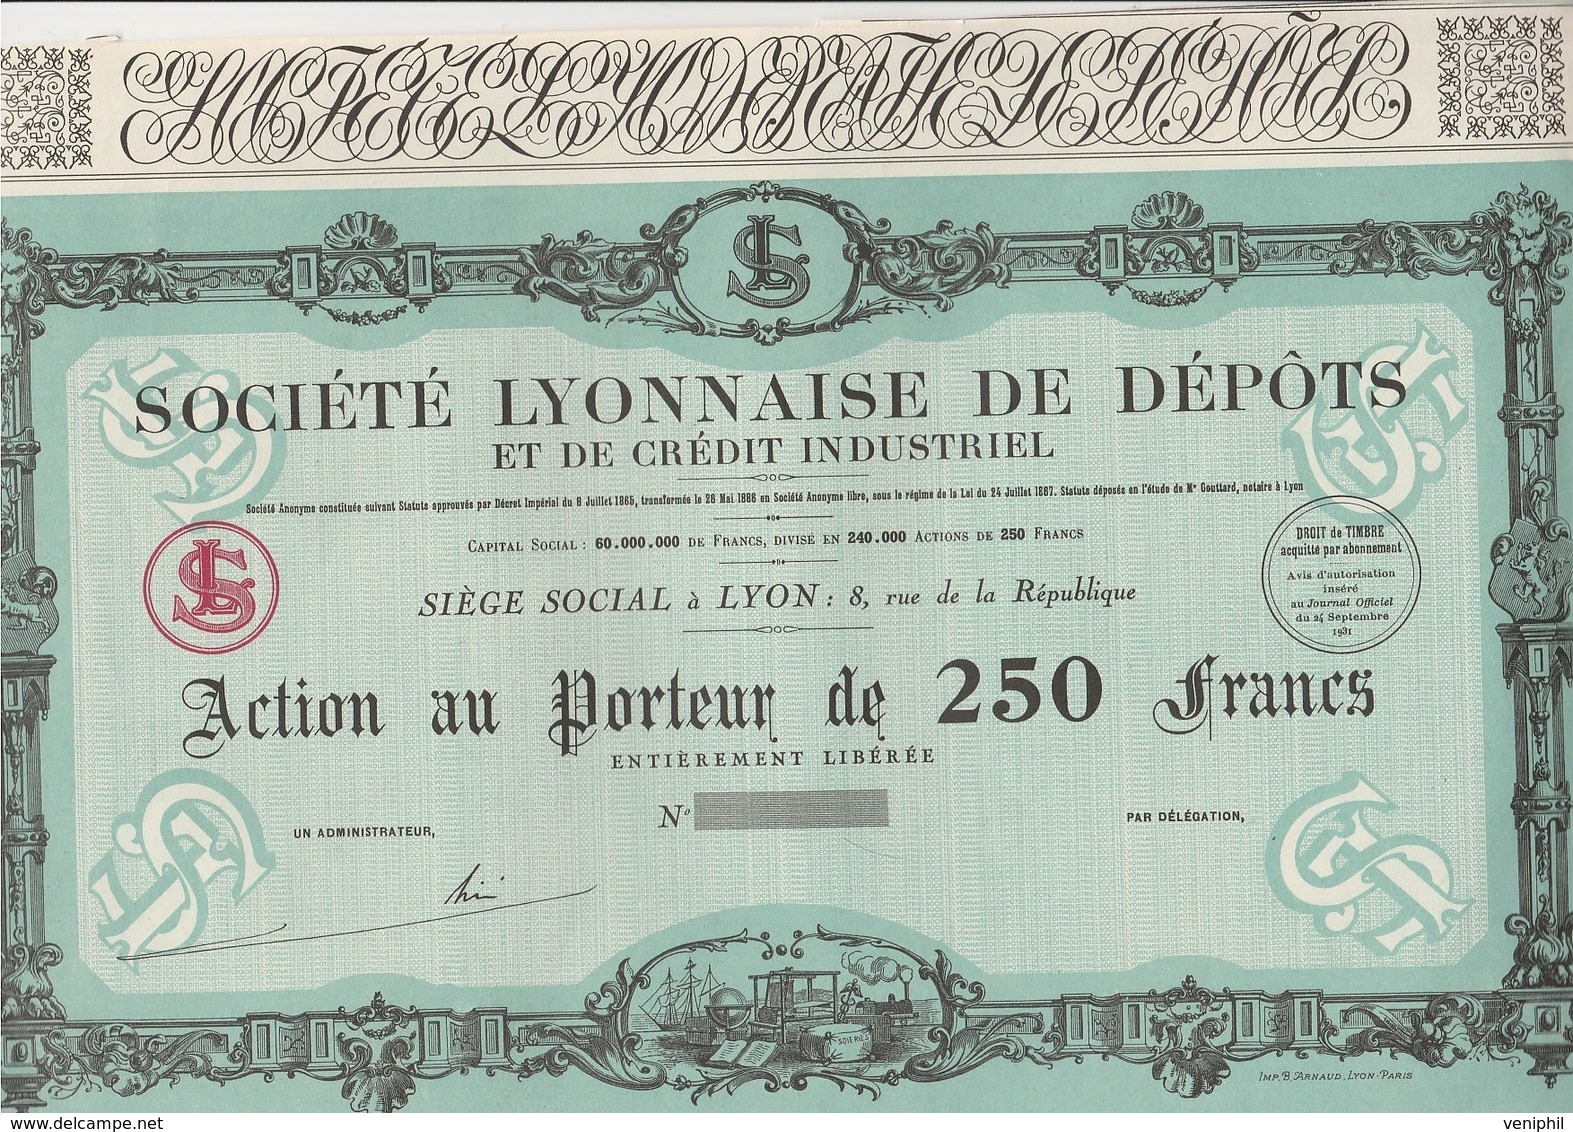 ACTION DE 250 FRANCS  - SOCIETE LYONNAISE DE DEPOTS ET DE CREDIT INDUSTRIEL  - ANNEE 1931 - Banque & Assurance